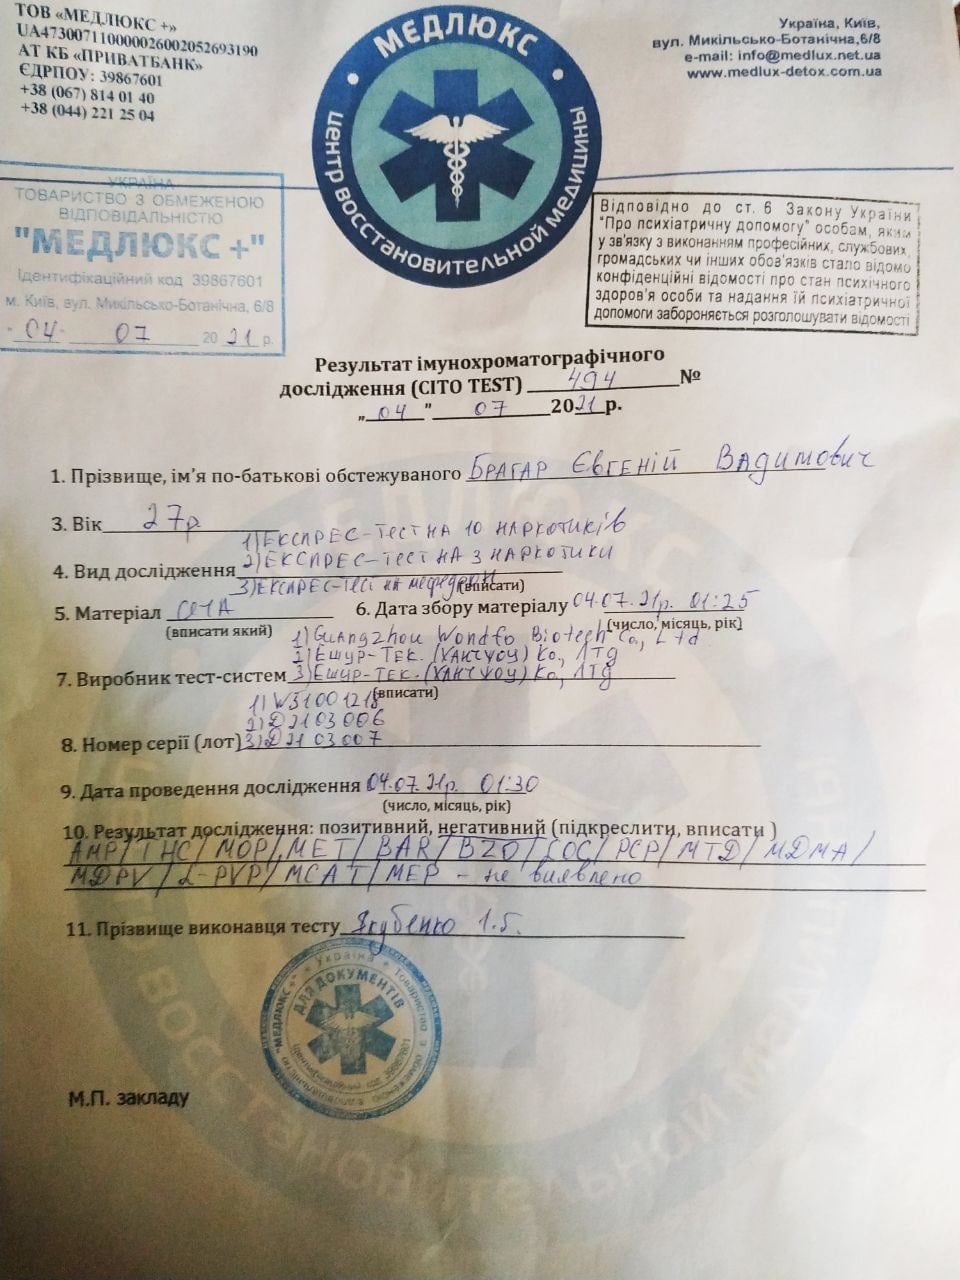 Депутата от "Слуги народа" заподозрили в вождении автомобиля под наркотиками